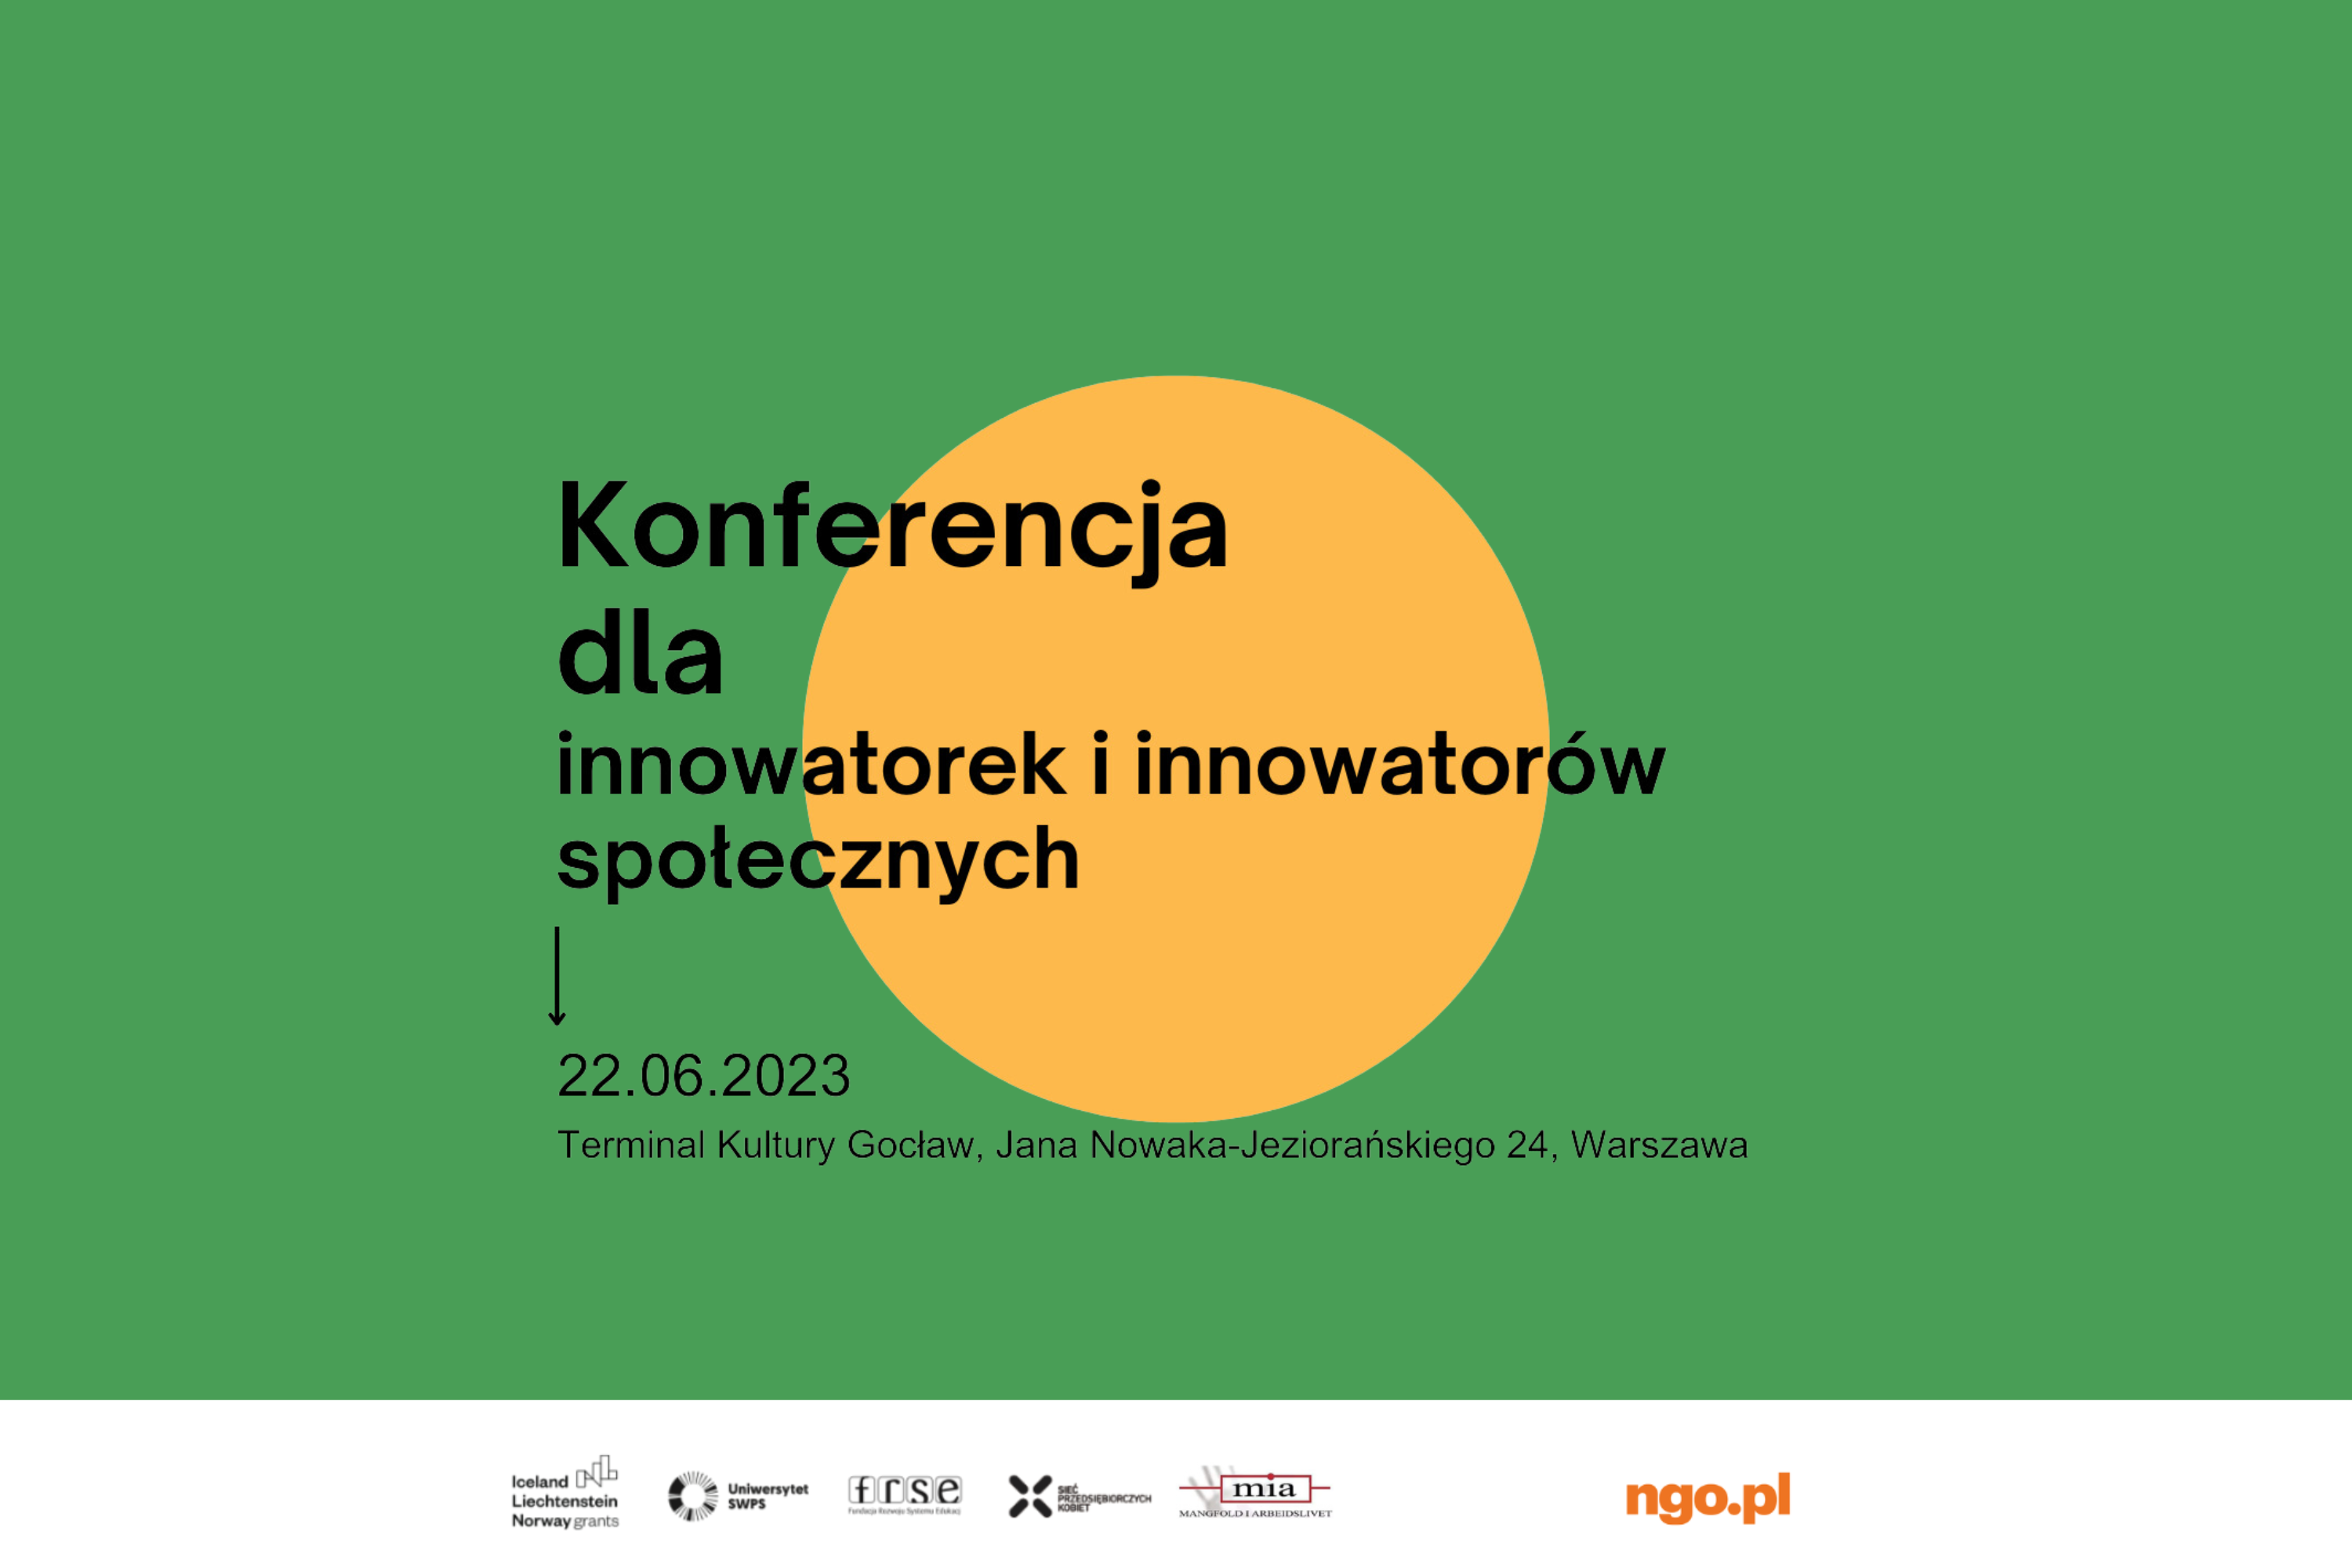 Tytuł wydarzenia "Konferencja dla innowatorek i innowatorów społecznych", 22.06.2023, Terminal Kultury Gocław, Warszawa